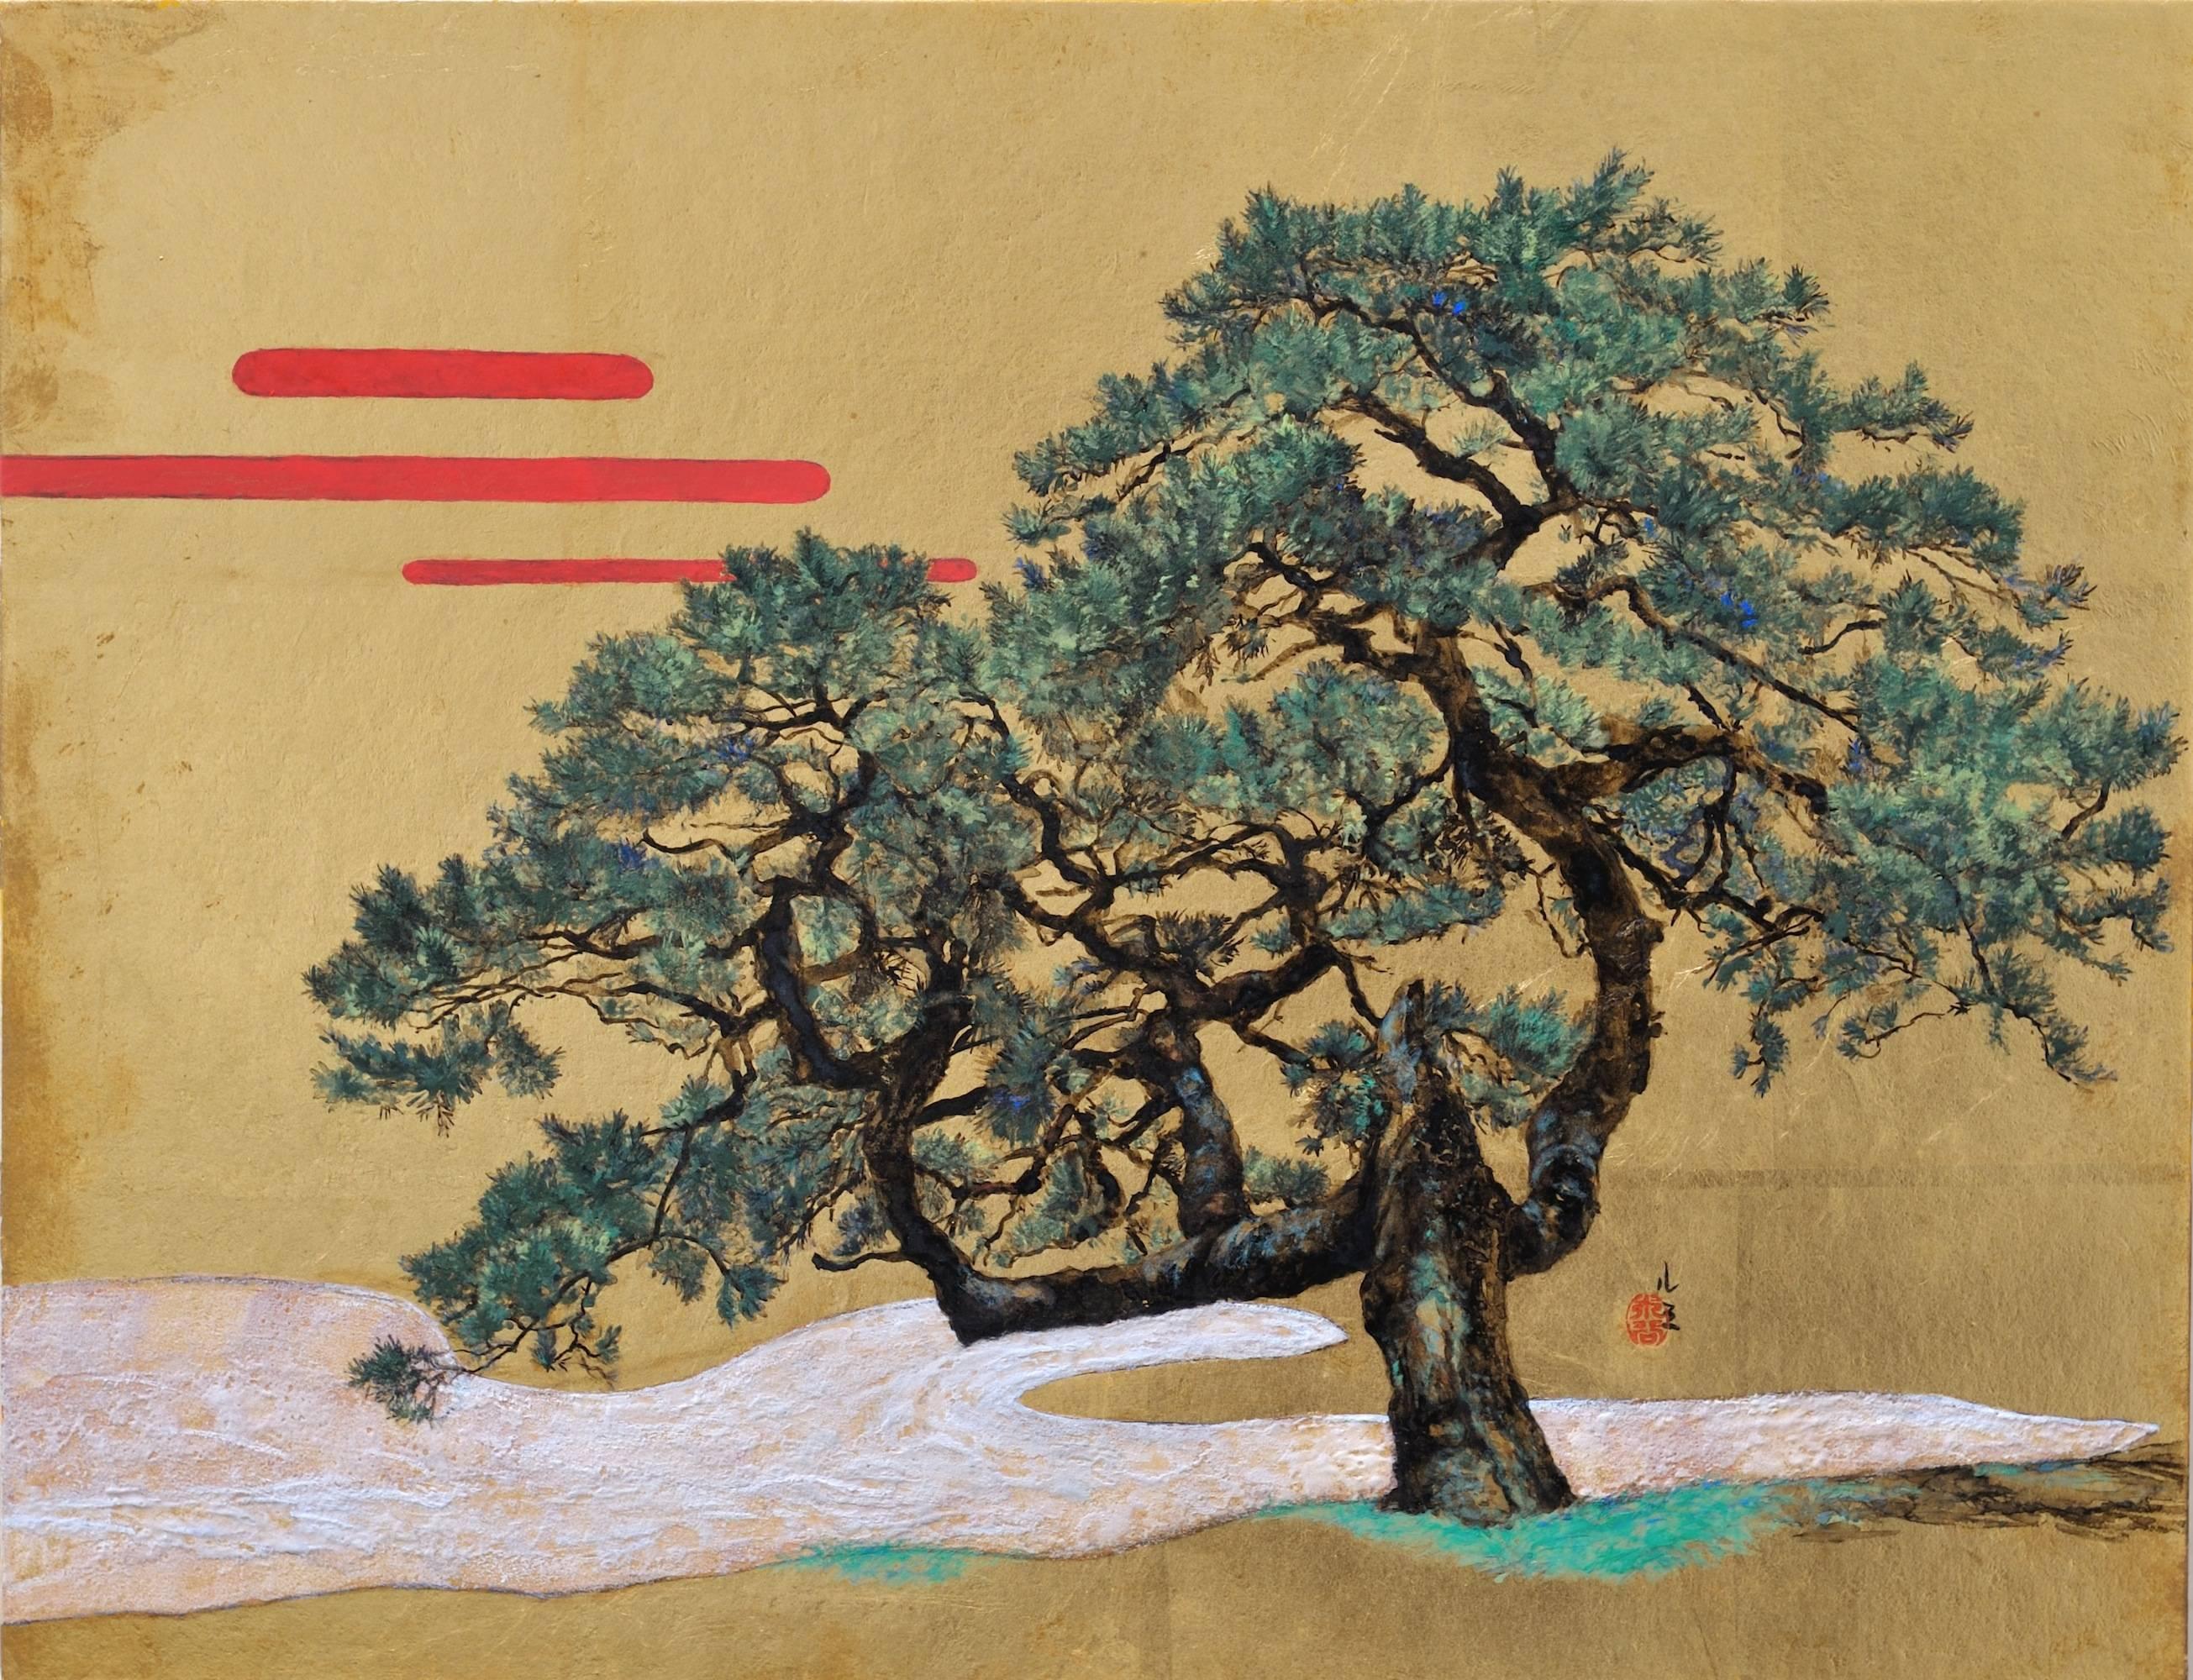 Memory von Lumi Mizutani – Landschaftsmalerei im japanischen Stil, Baum